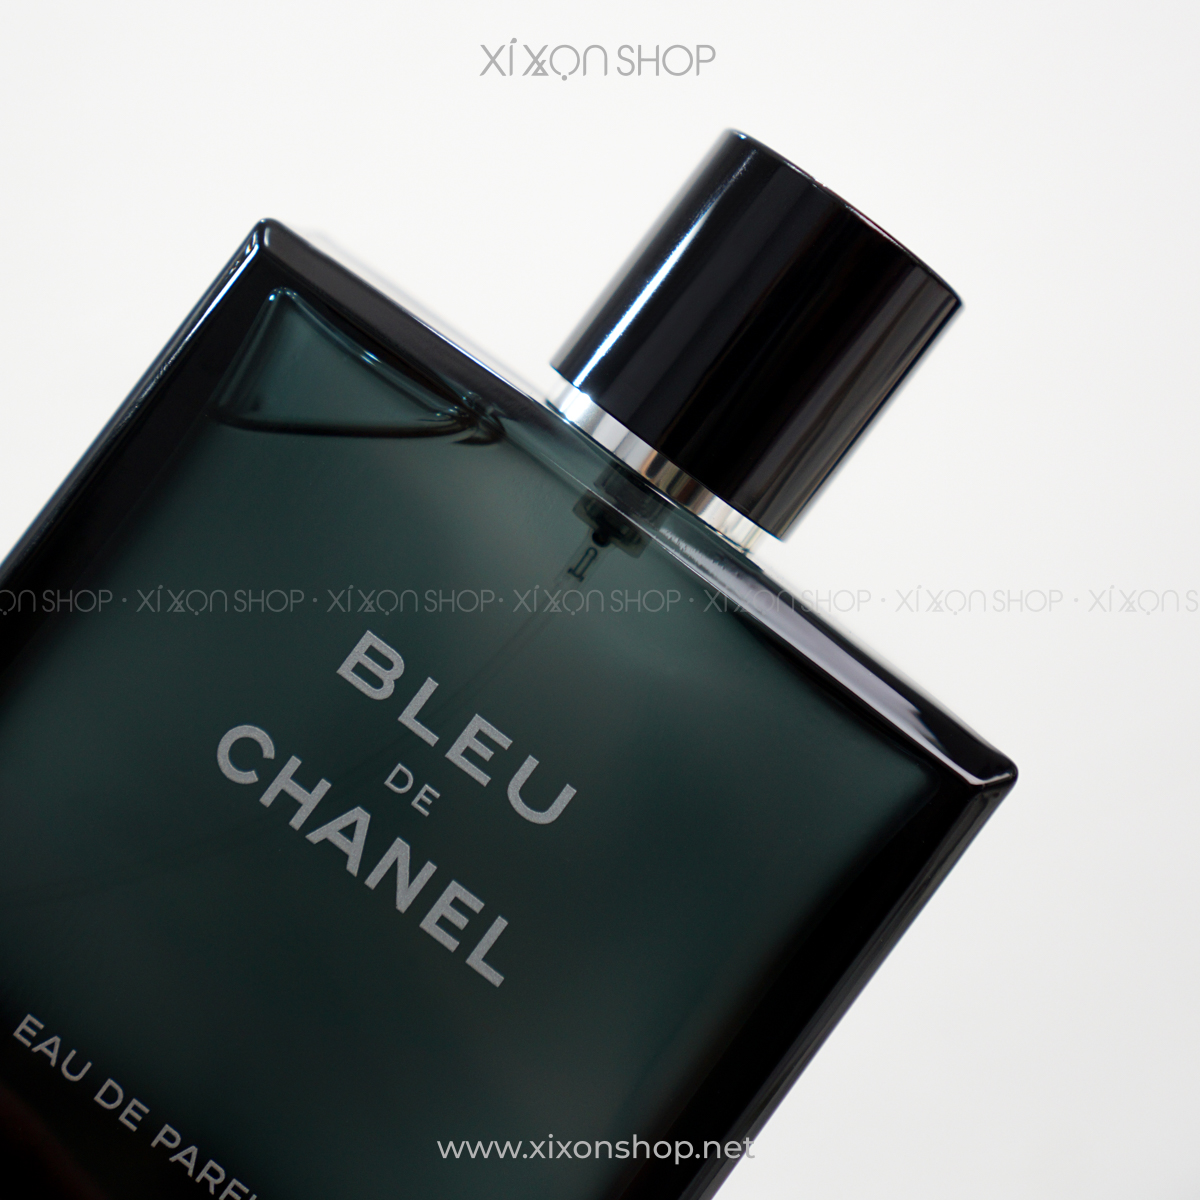 Chanel Bleu De Chanel For Men price in Saudi Arabia  Compare Prices